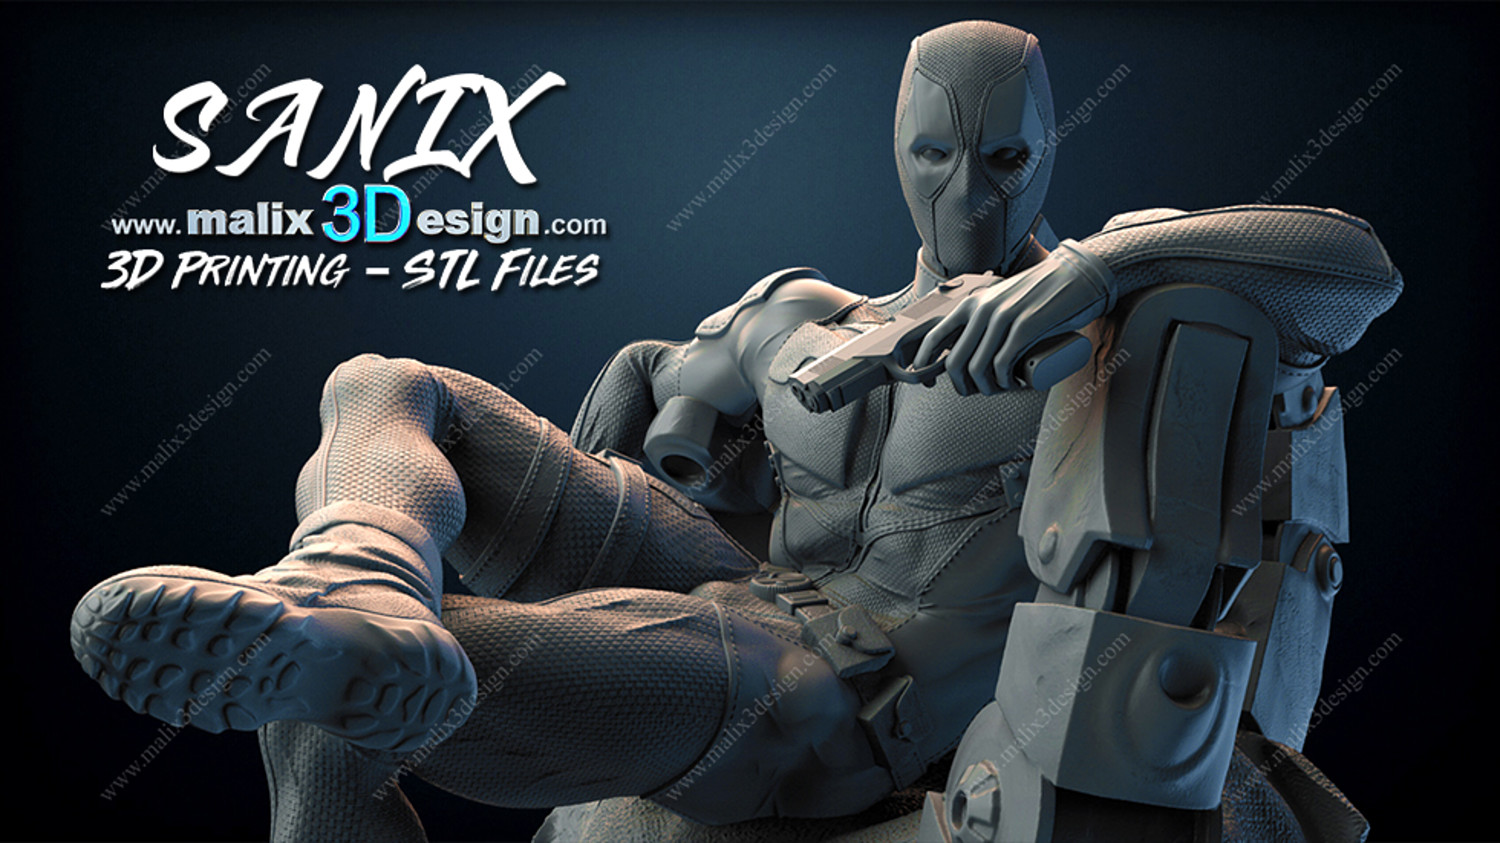 Deadpool & Lady Deadpool 3D printable Ready